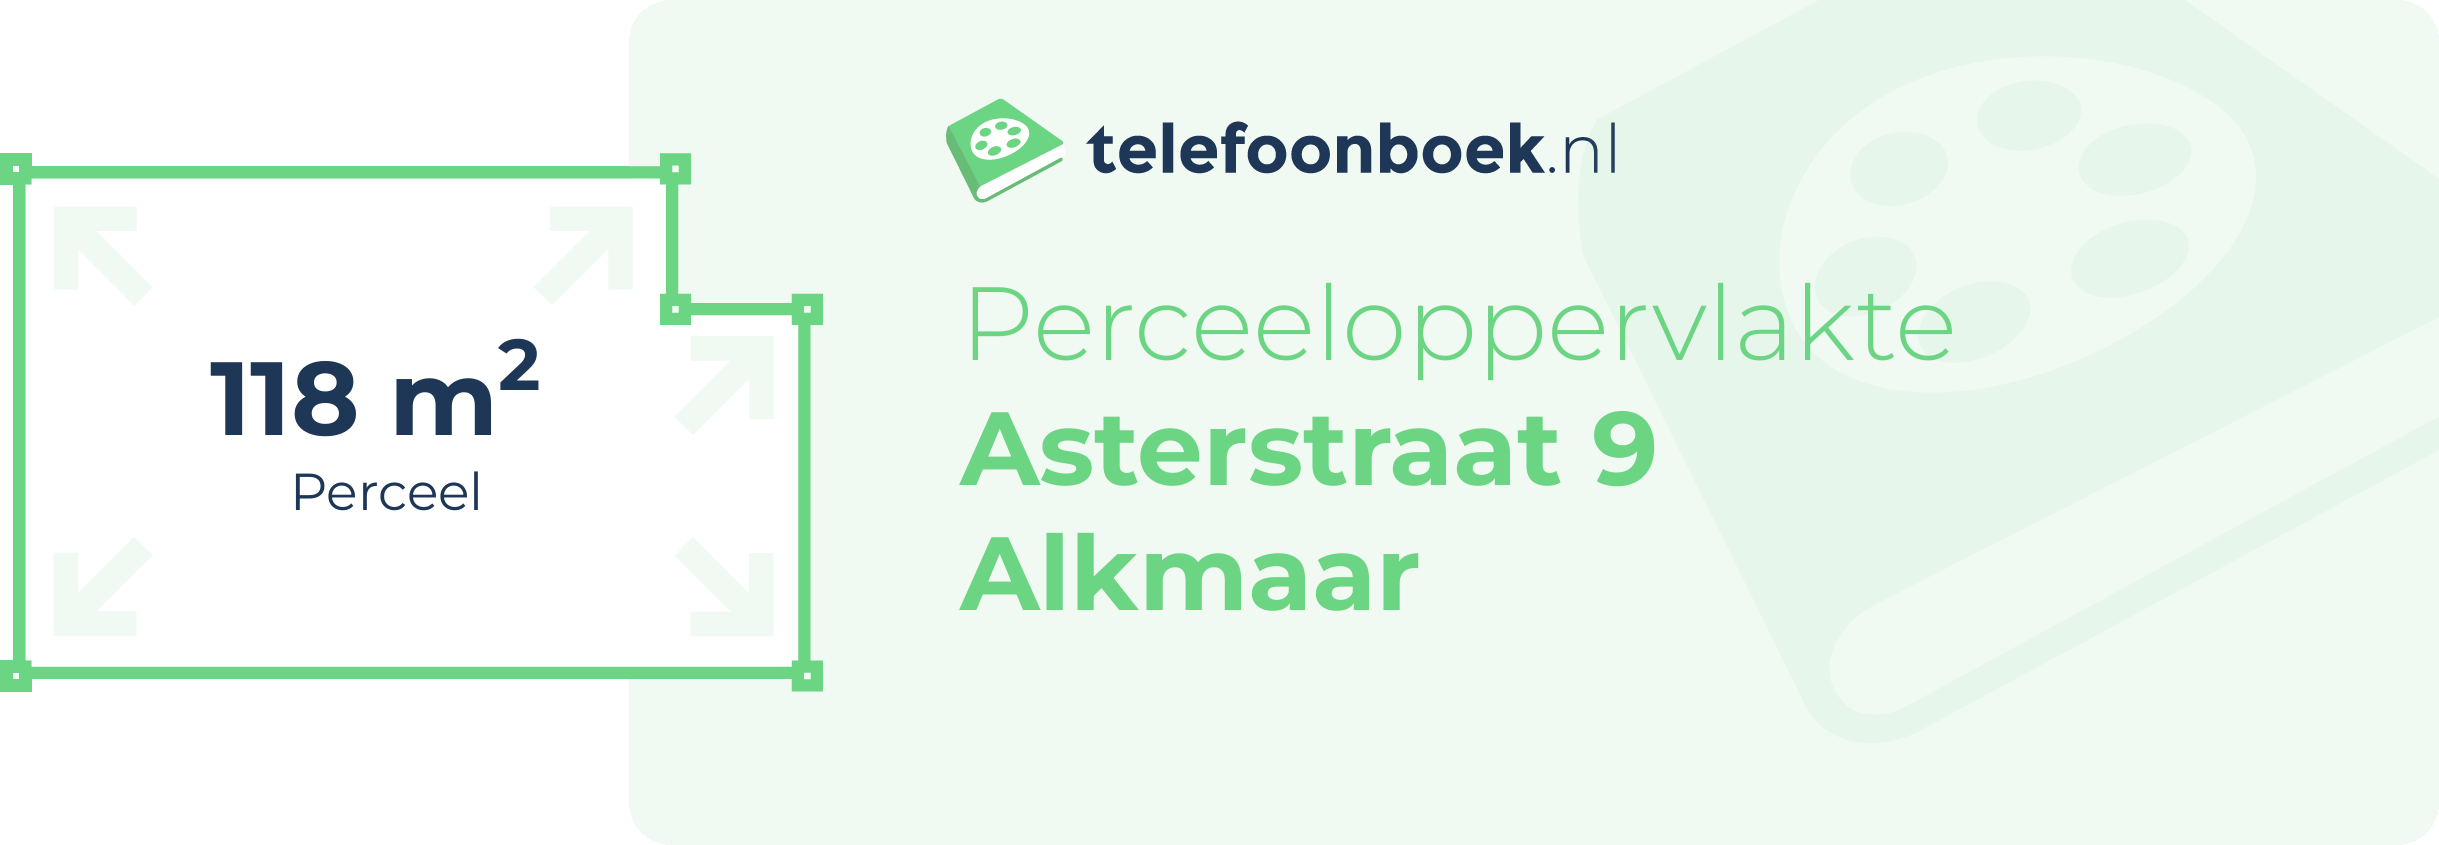 Perceeloppervlakte Asterstraat 9 Alkmaar